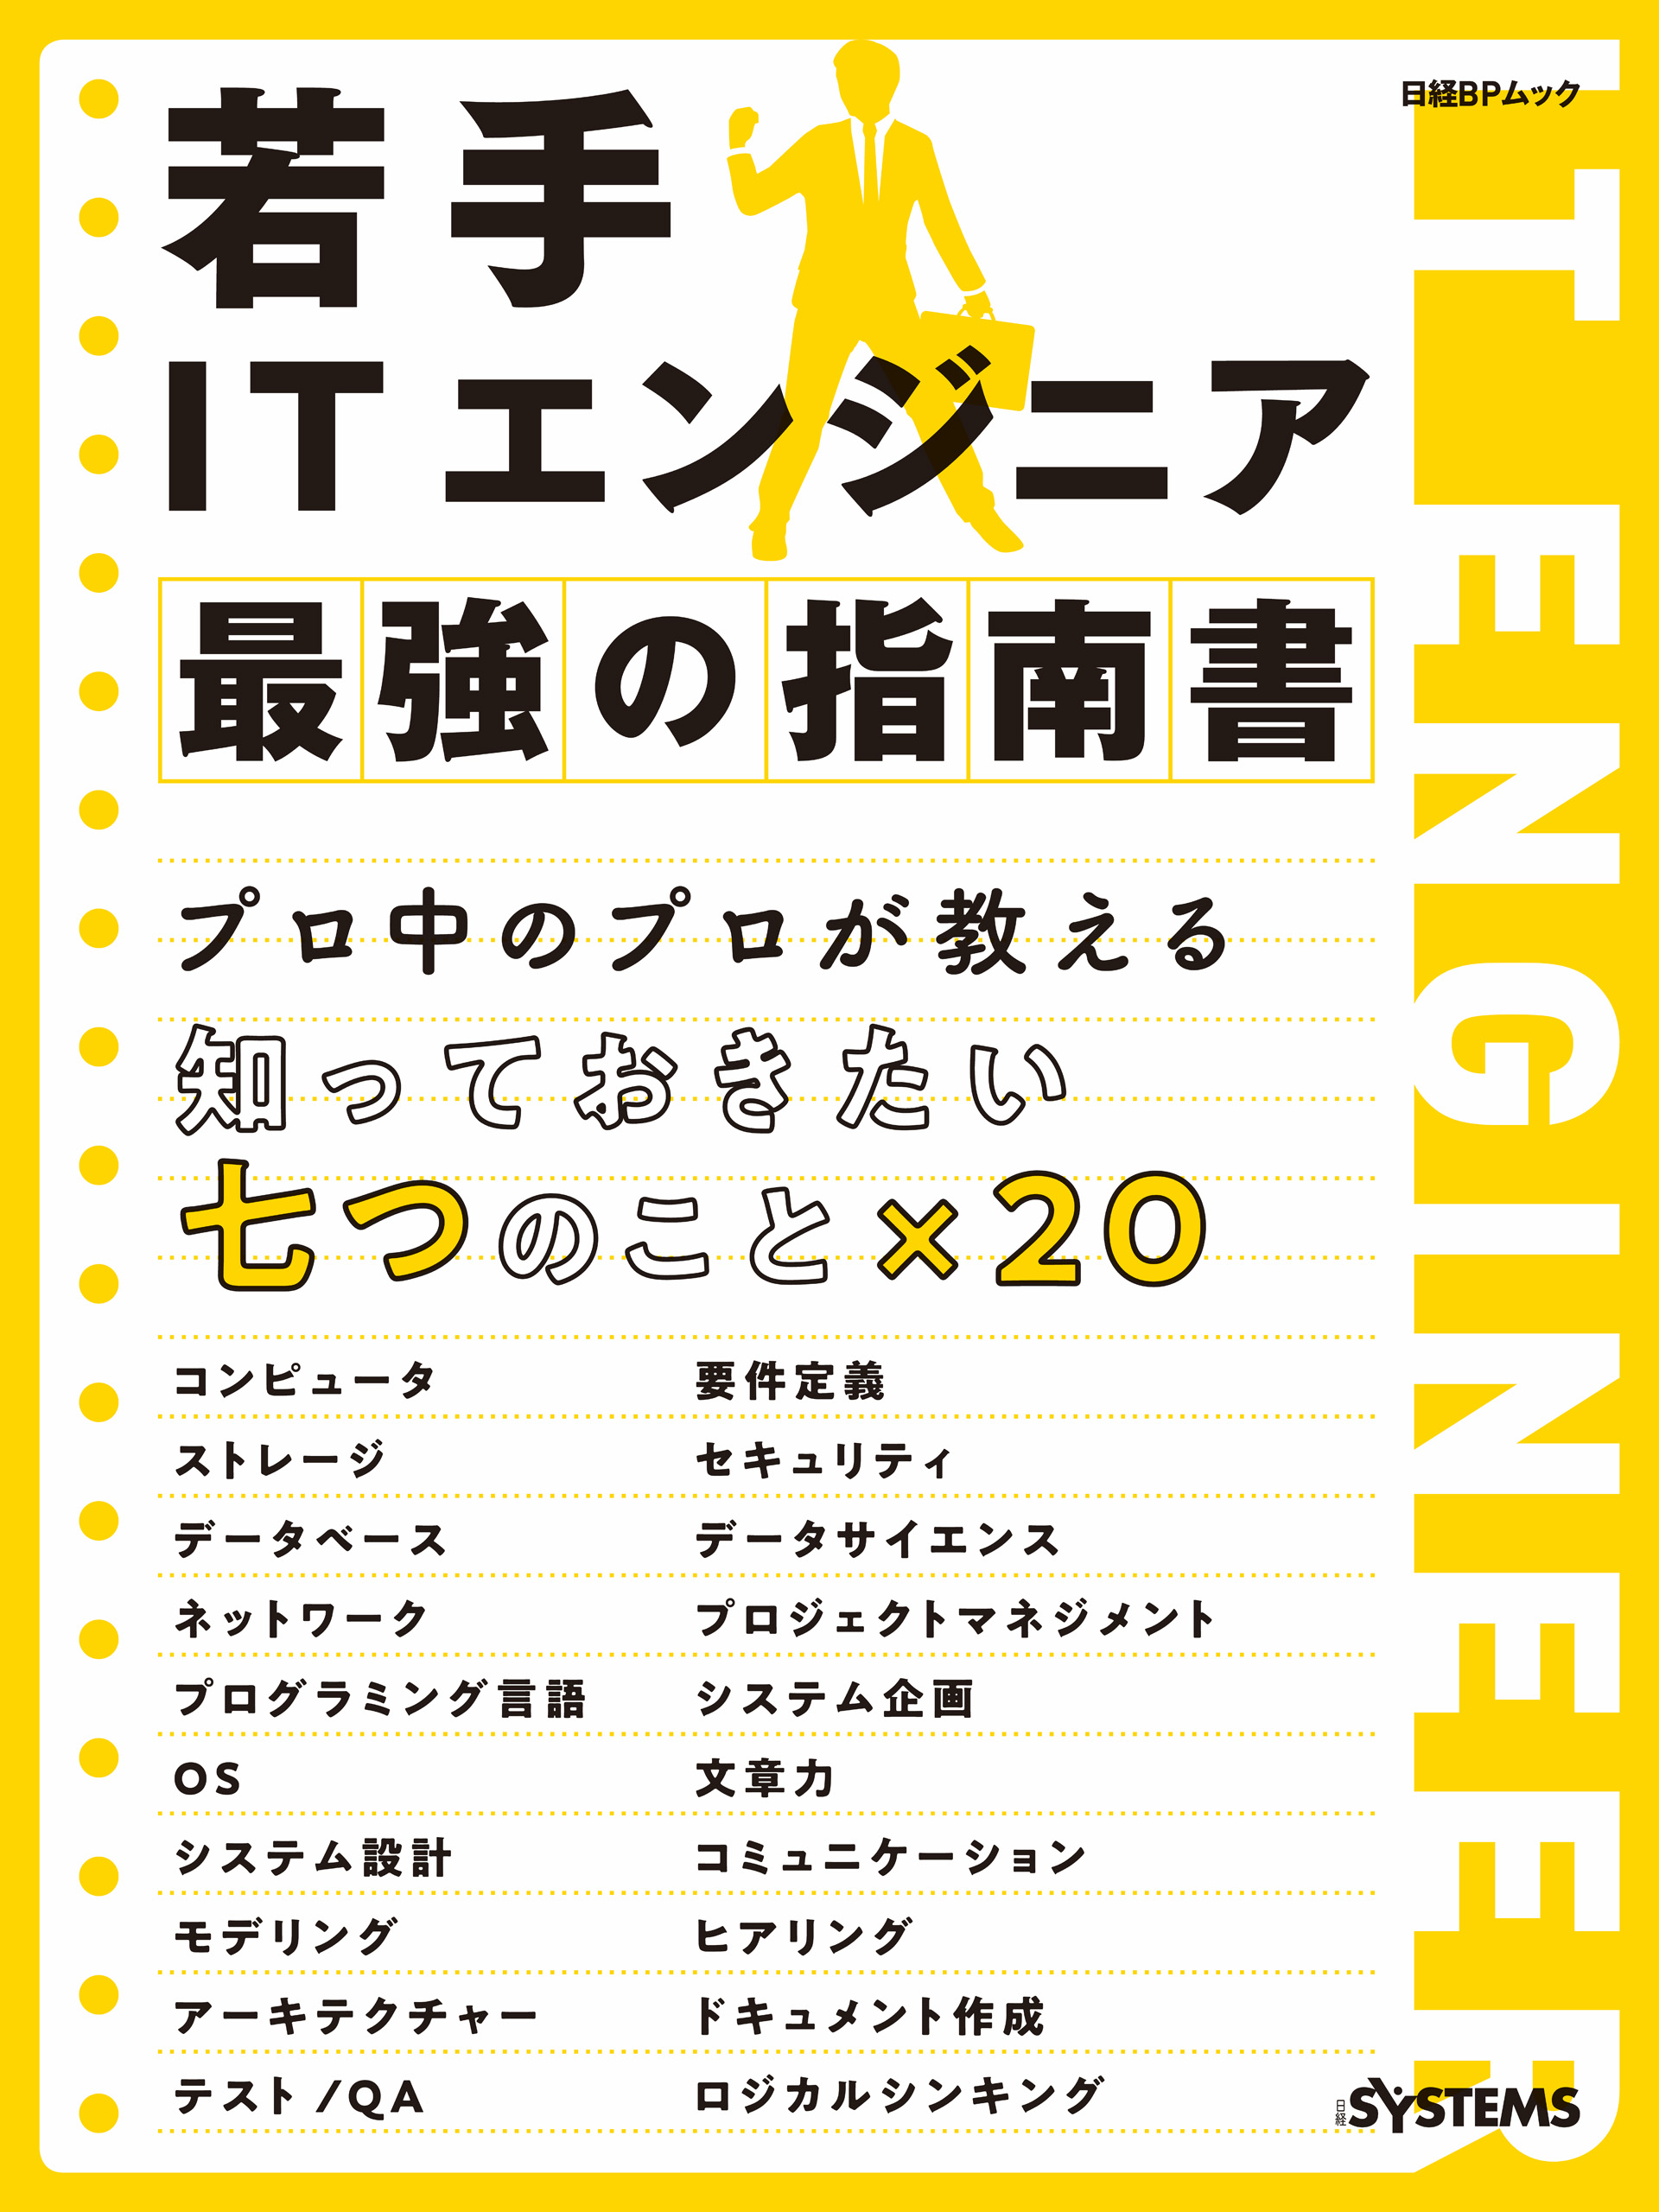 【日本産】本若手ITエンジニア 最強の指南書 - 日経SYSTEMS - 漫画・無料試し